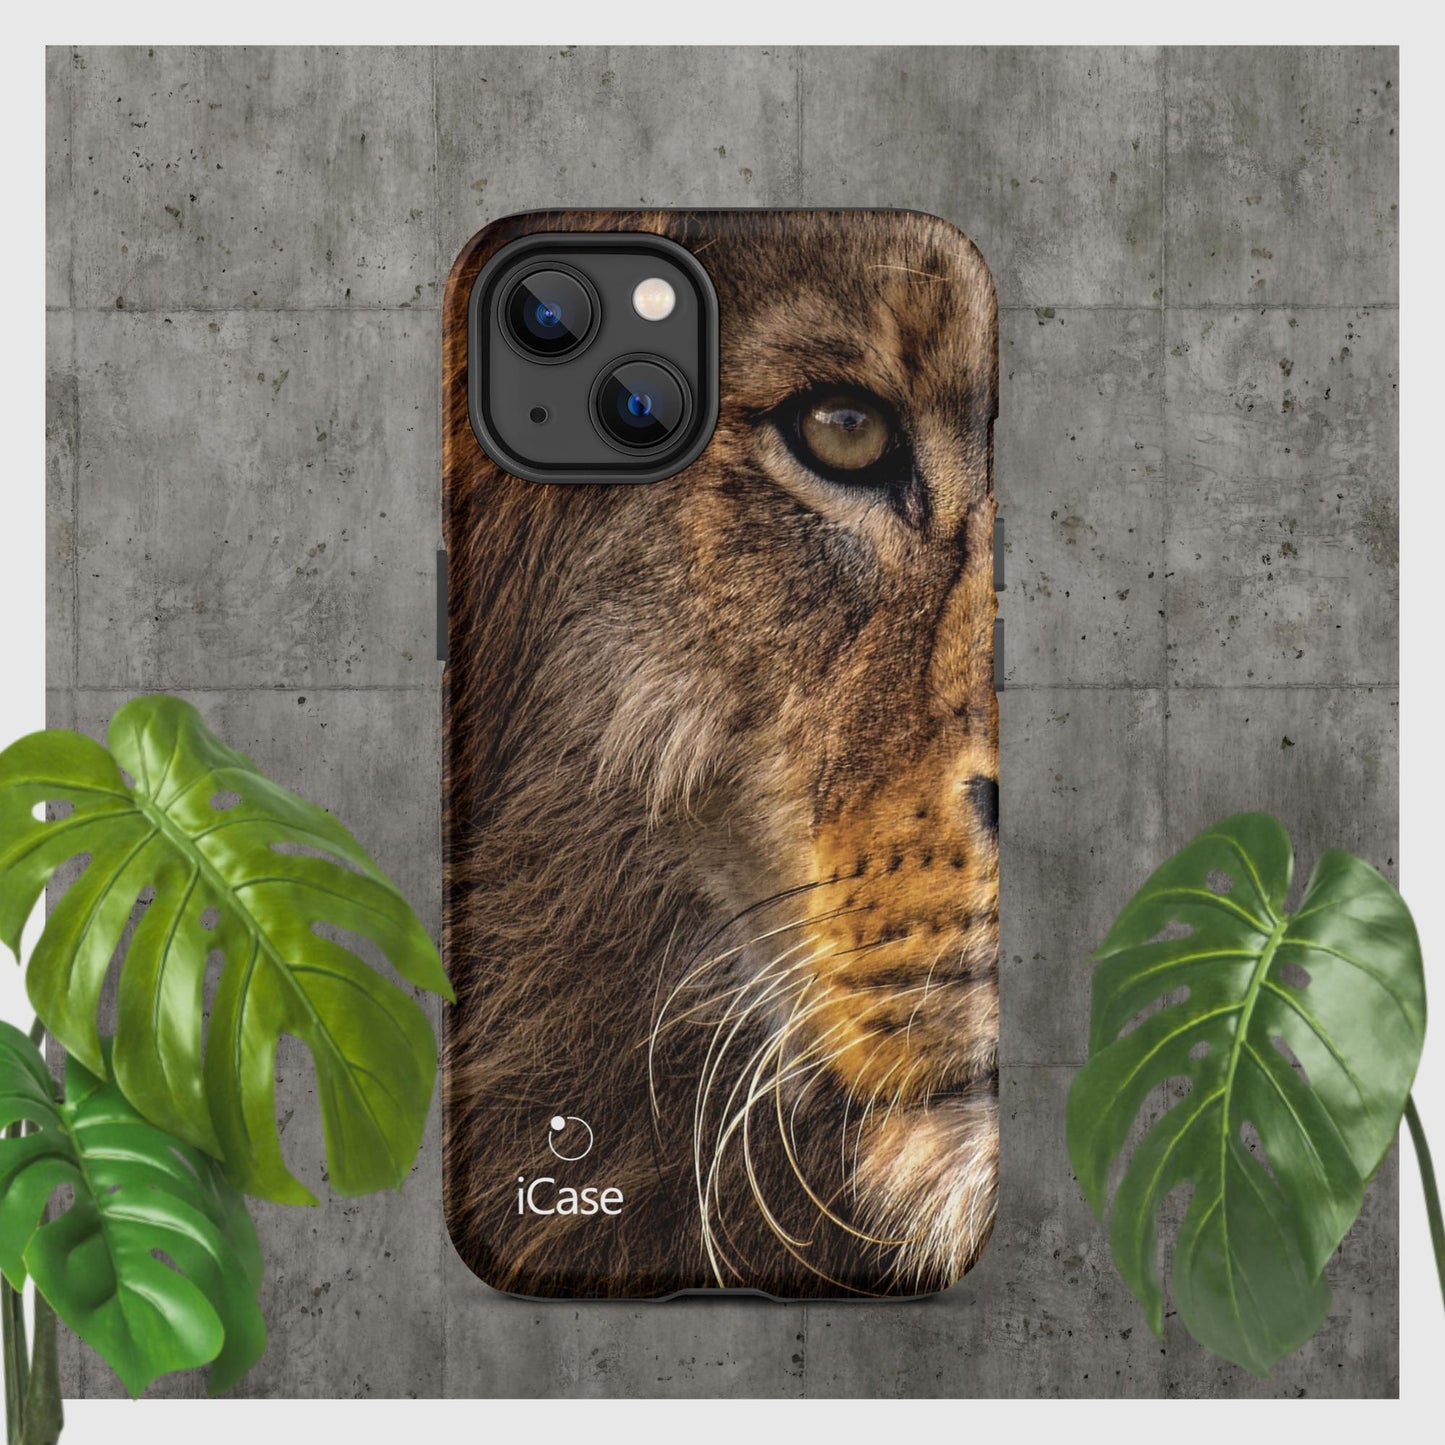 iCase® Lion HardCase iPhone® étui pour téléphone portable